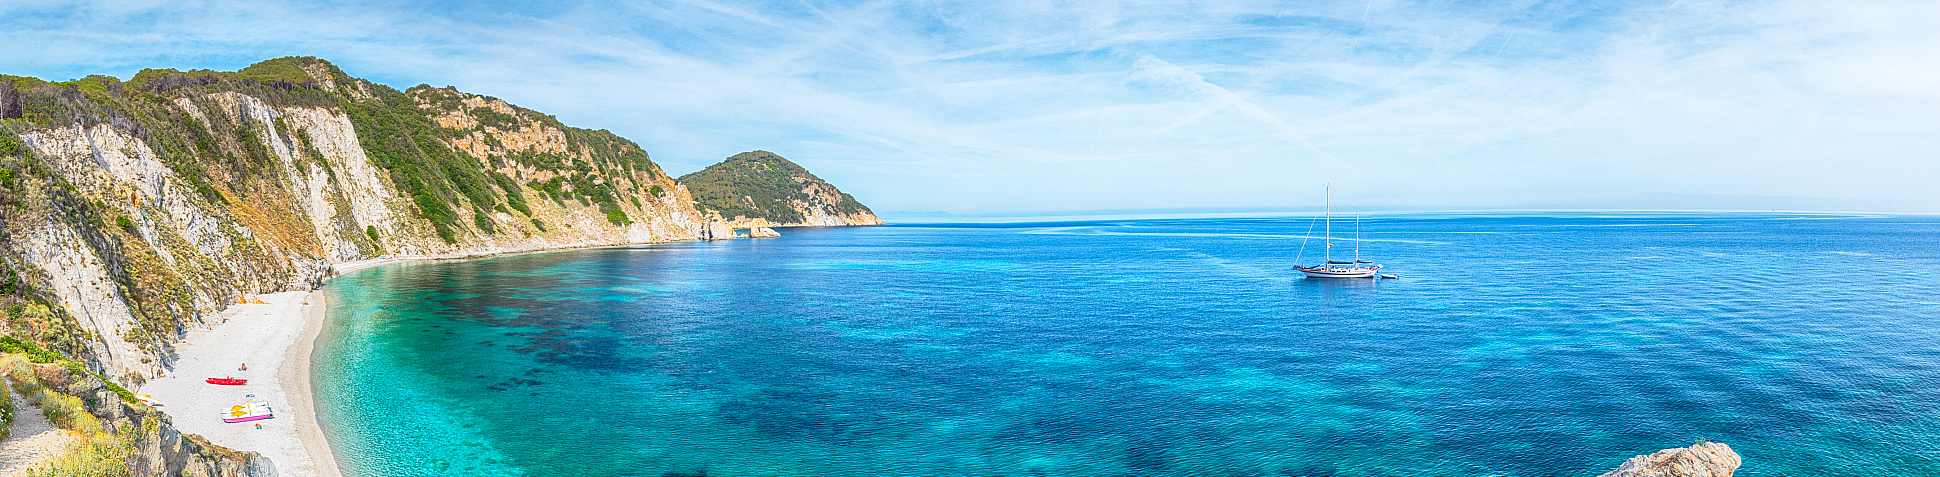 Traumhafter Blick auf eine Bucht auf Elba